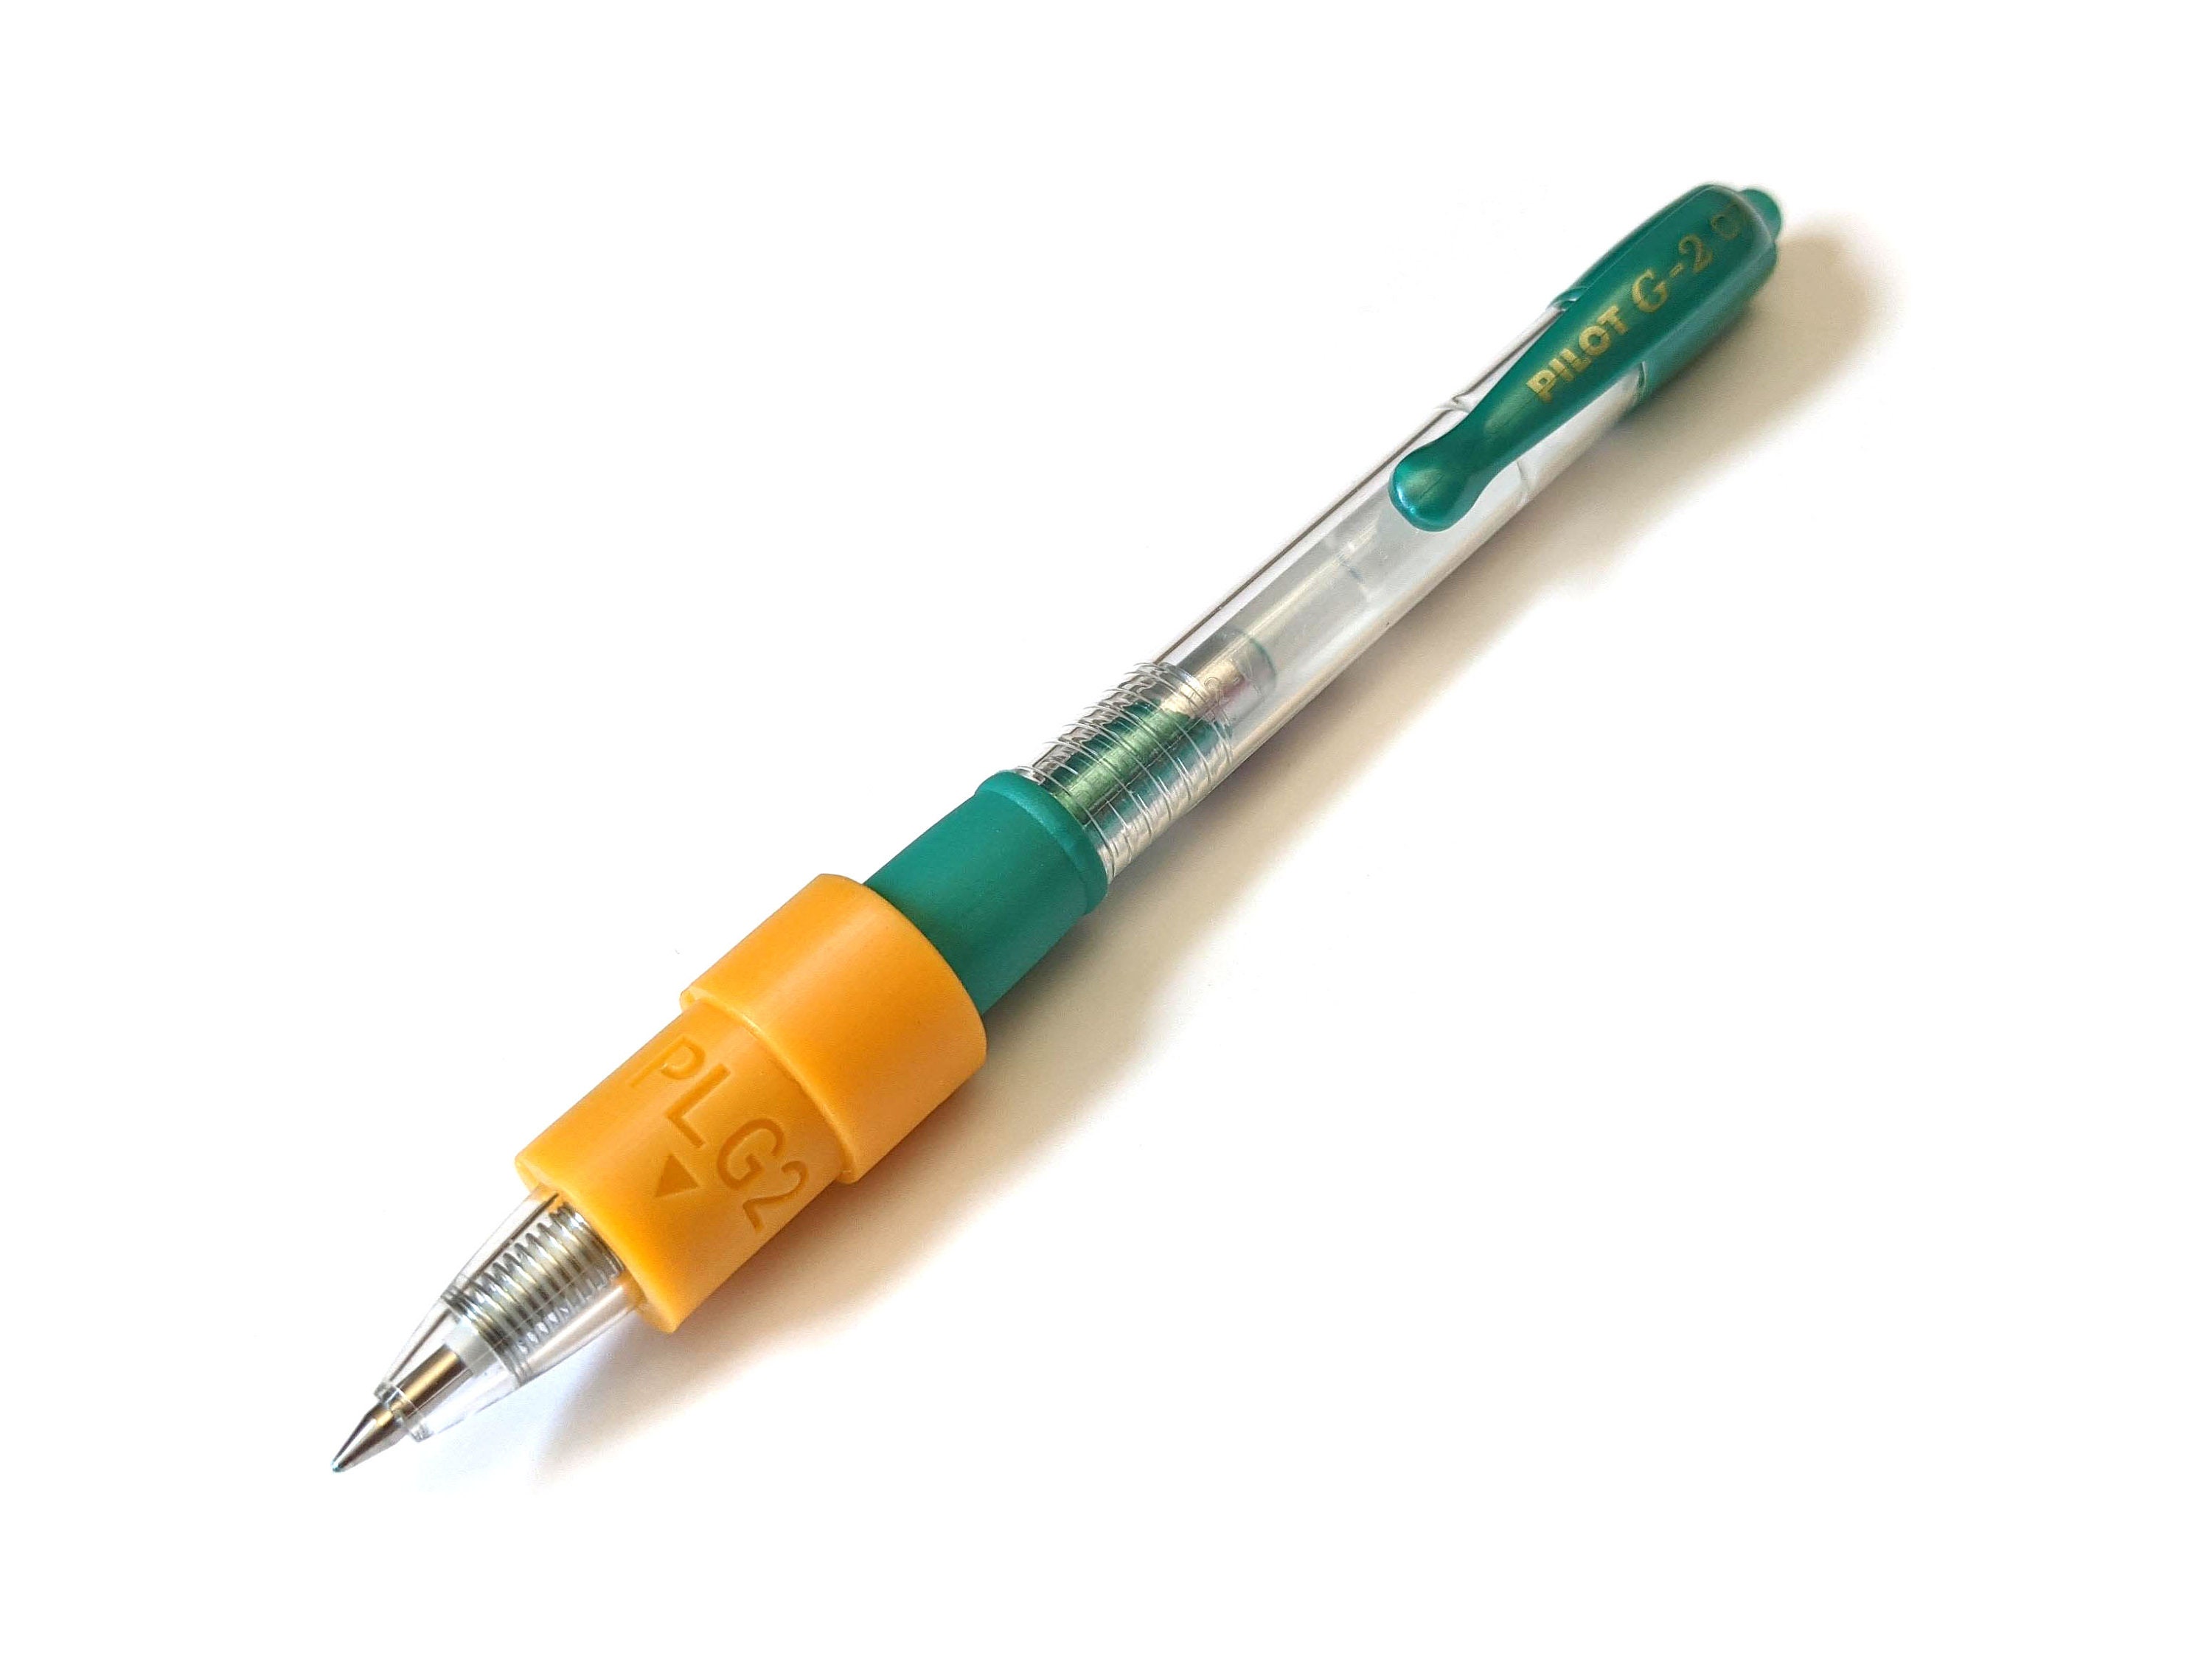 G2 Pilot Pen Adapter for the Cricut® Maker and Explorer Air 2